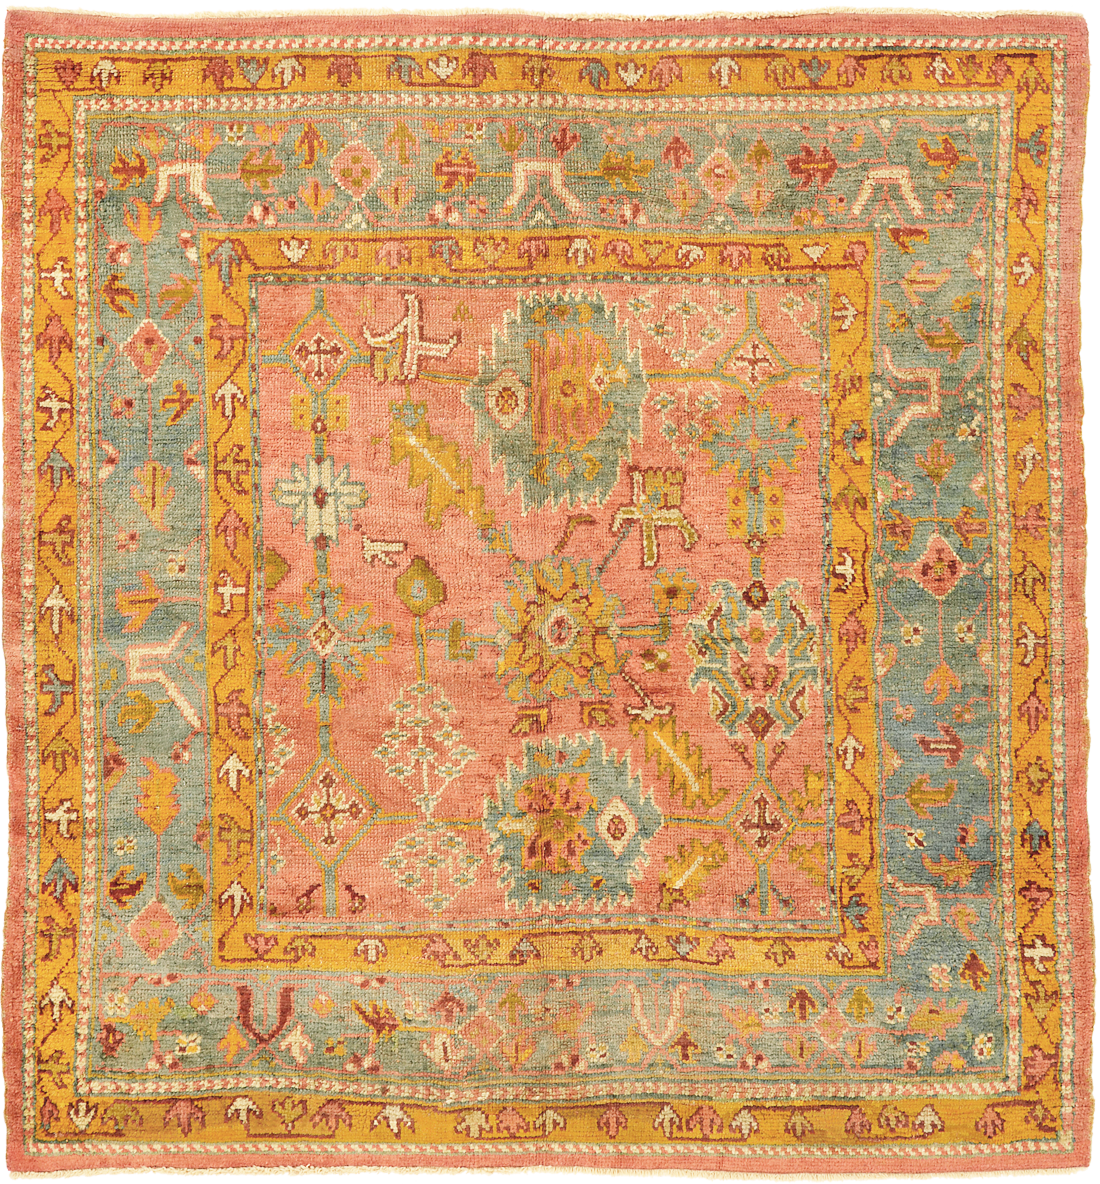 Oushak carpet